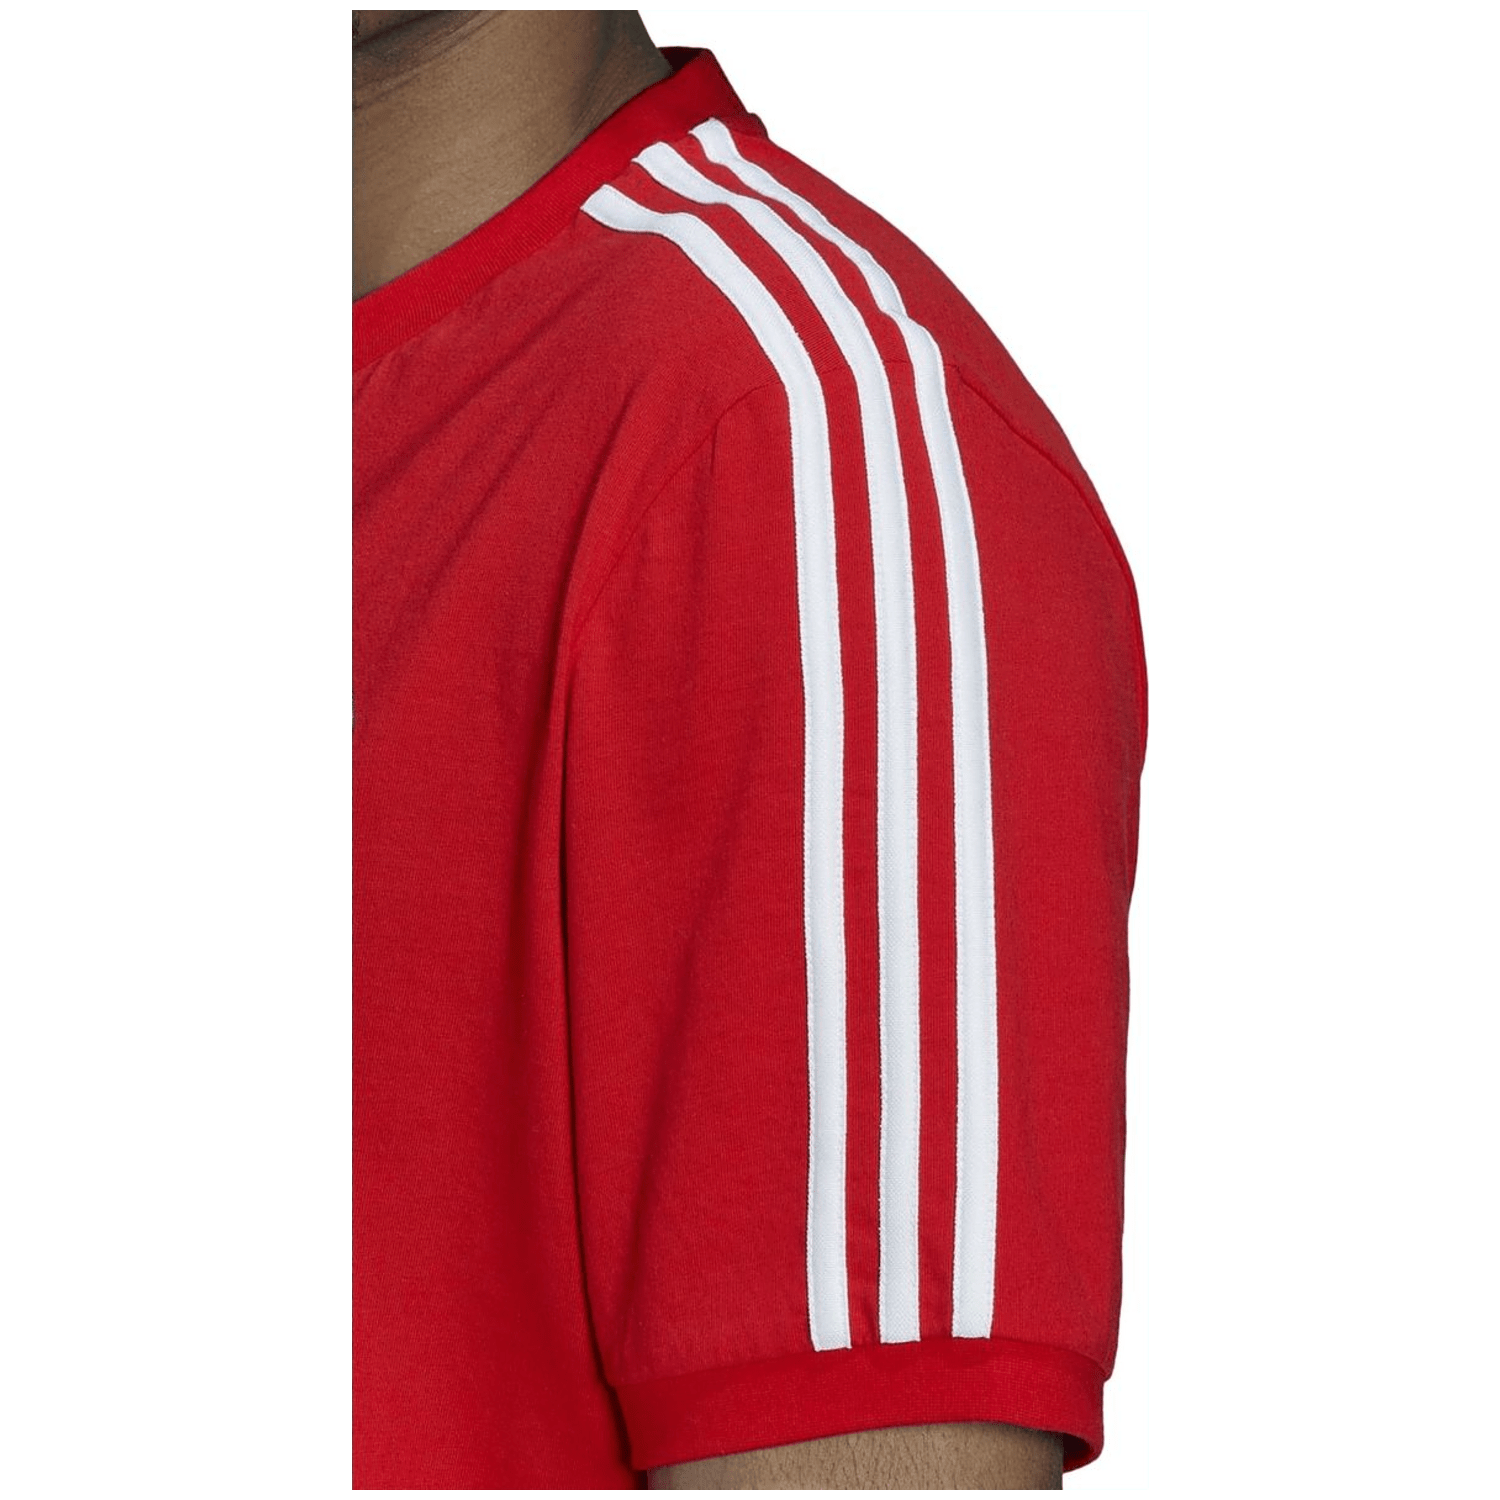 Adidas FC Bayern München DNA 3-Streifen T-Shirt Herren